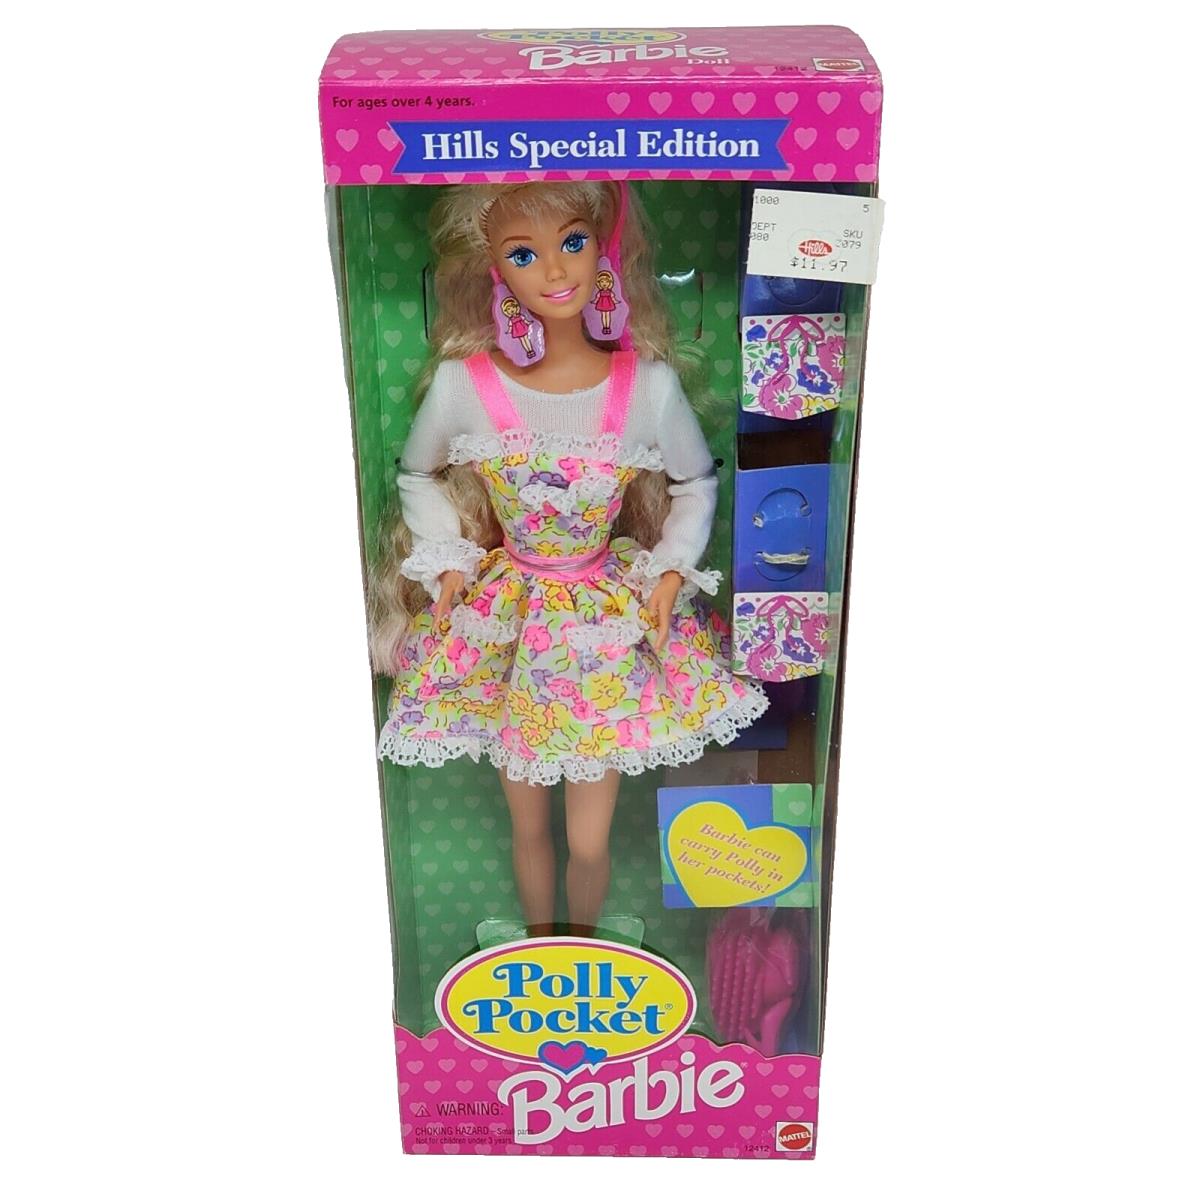 Vintage 1994 Polly Pocket Barbie Doll Mattel Hills ED 12412 Nos